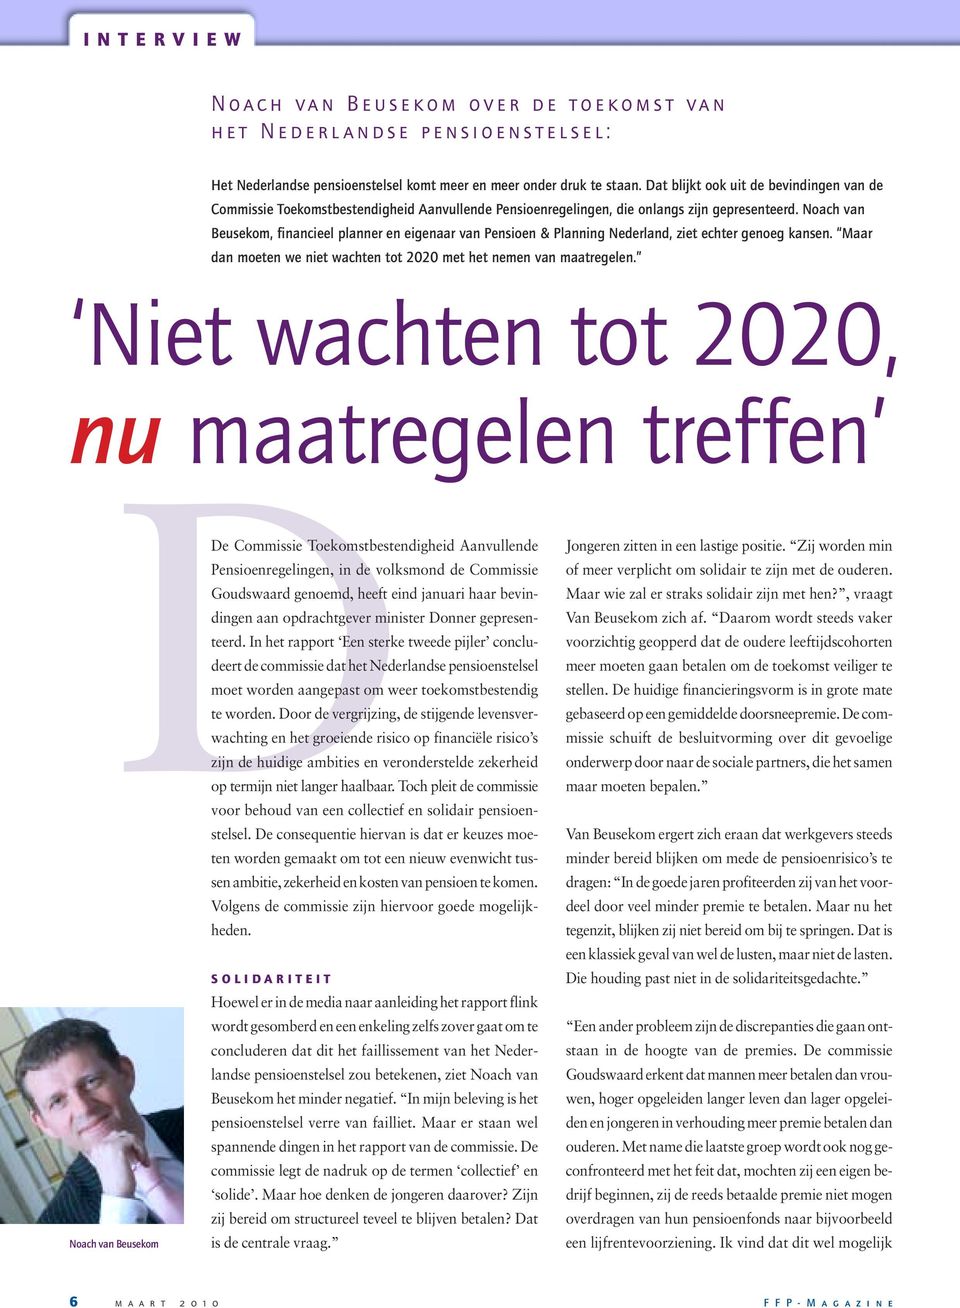 Noach van Beusekom, financieel planner en eigenaar van Pensioen & Planning Nederland, ziet echter genoeg kansen. Maar dan moeten we niet wachten tot 2020 met het nemen van maatregelen.